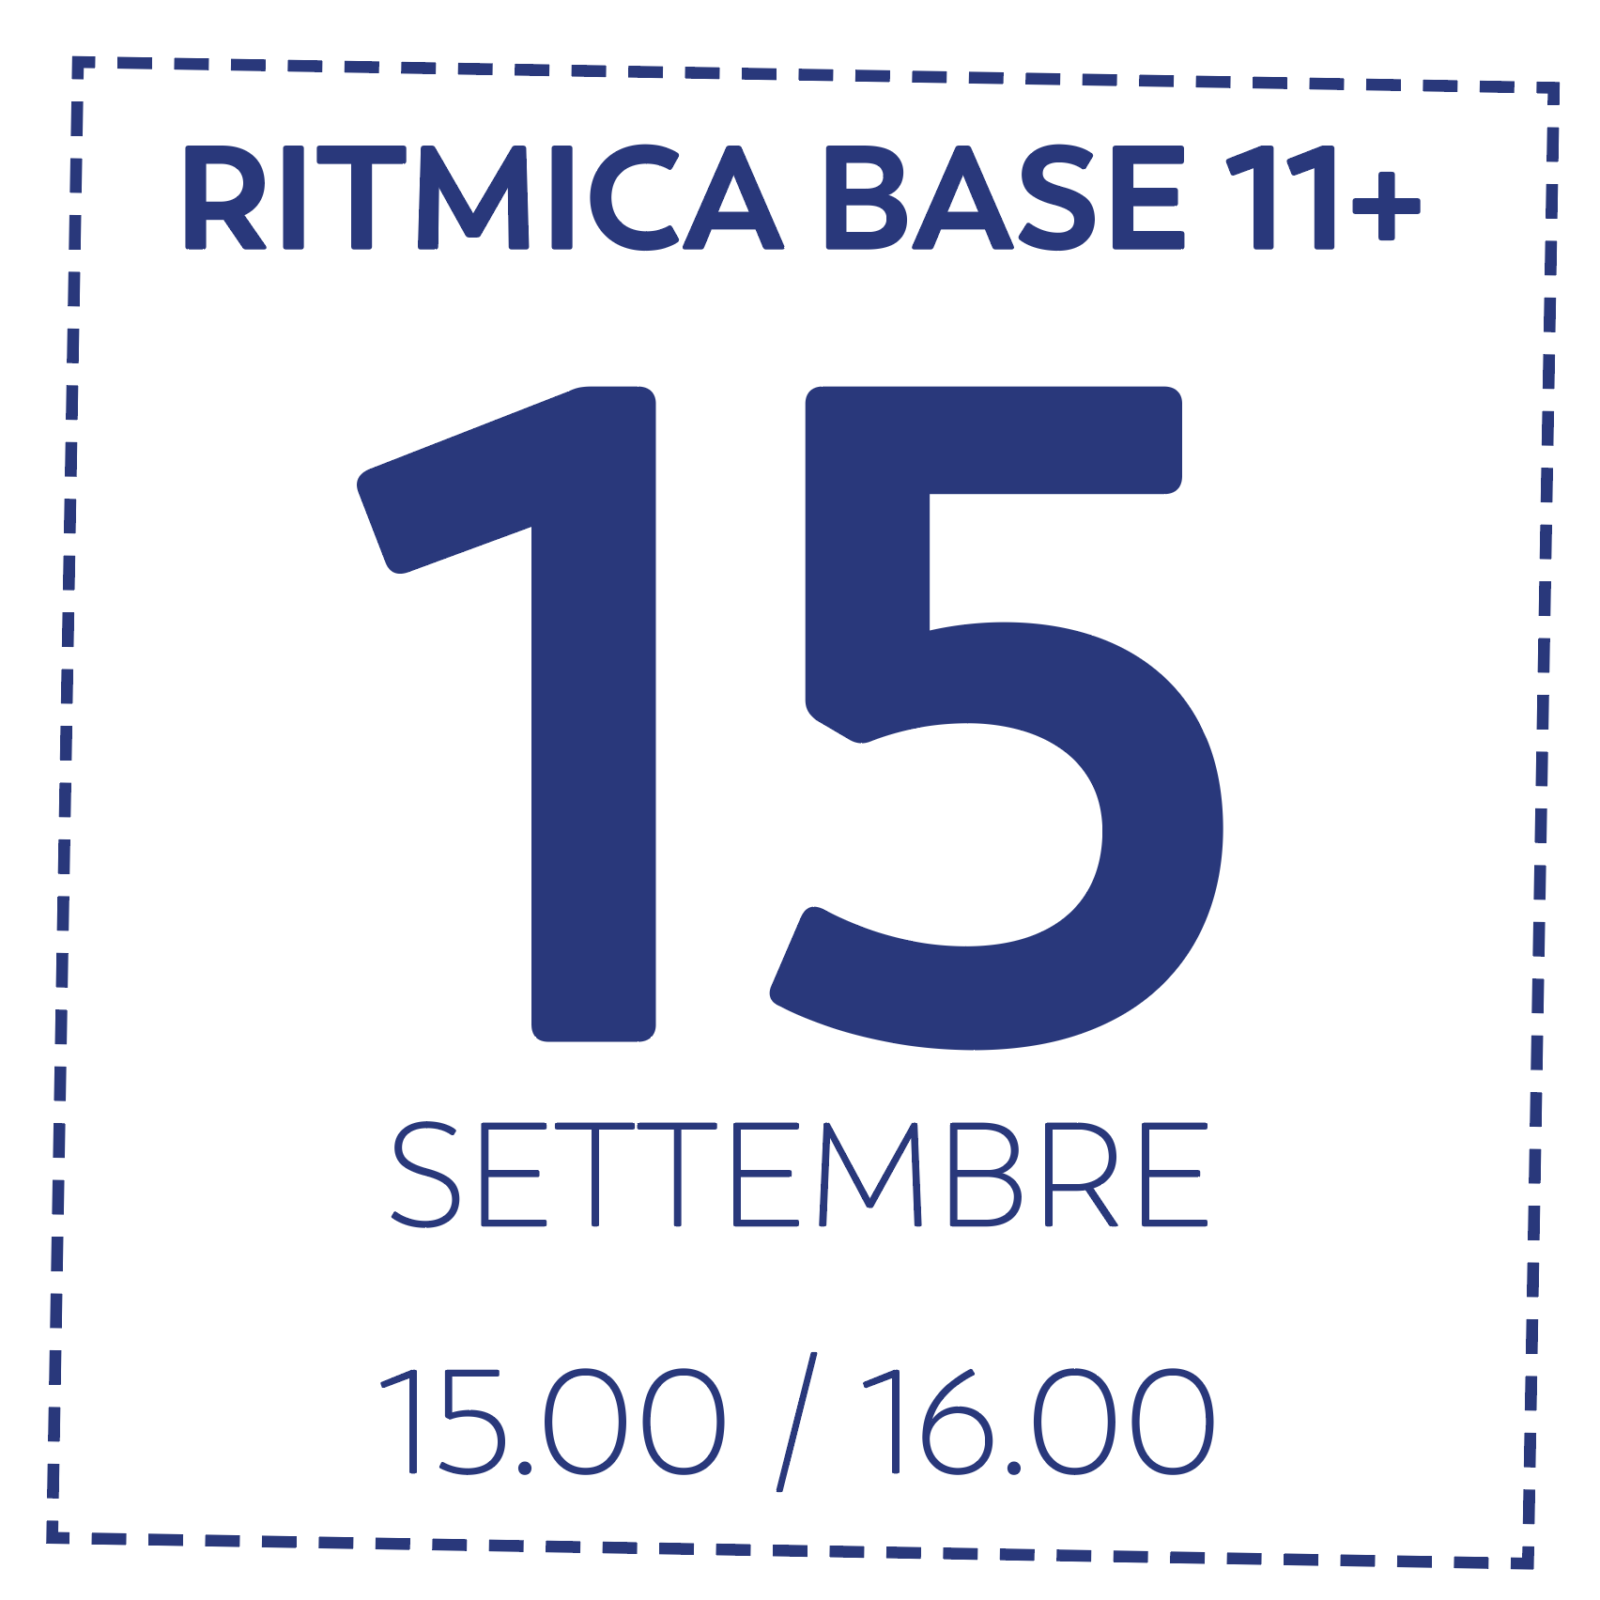 OD RITMICA BASE 11+ - 15/9